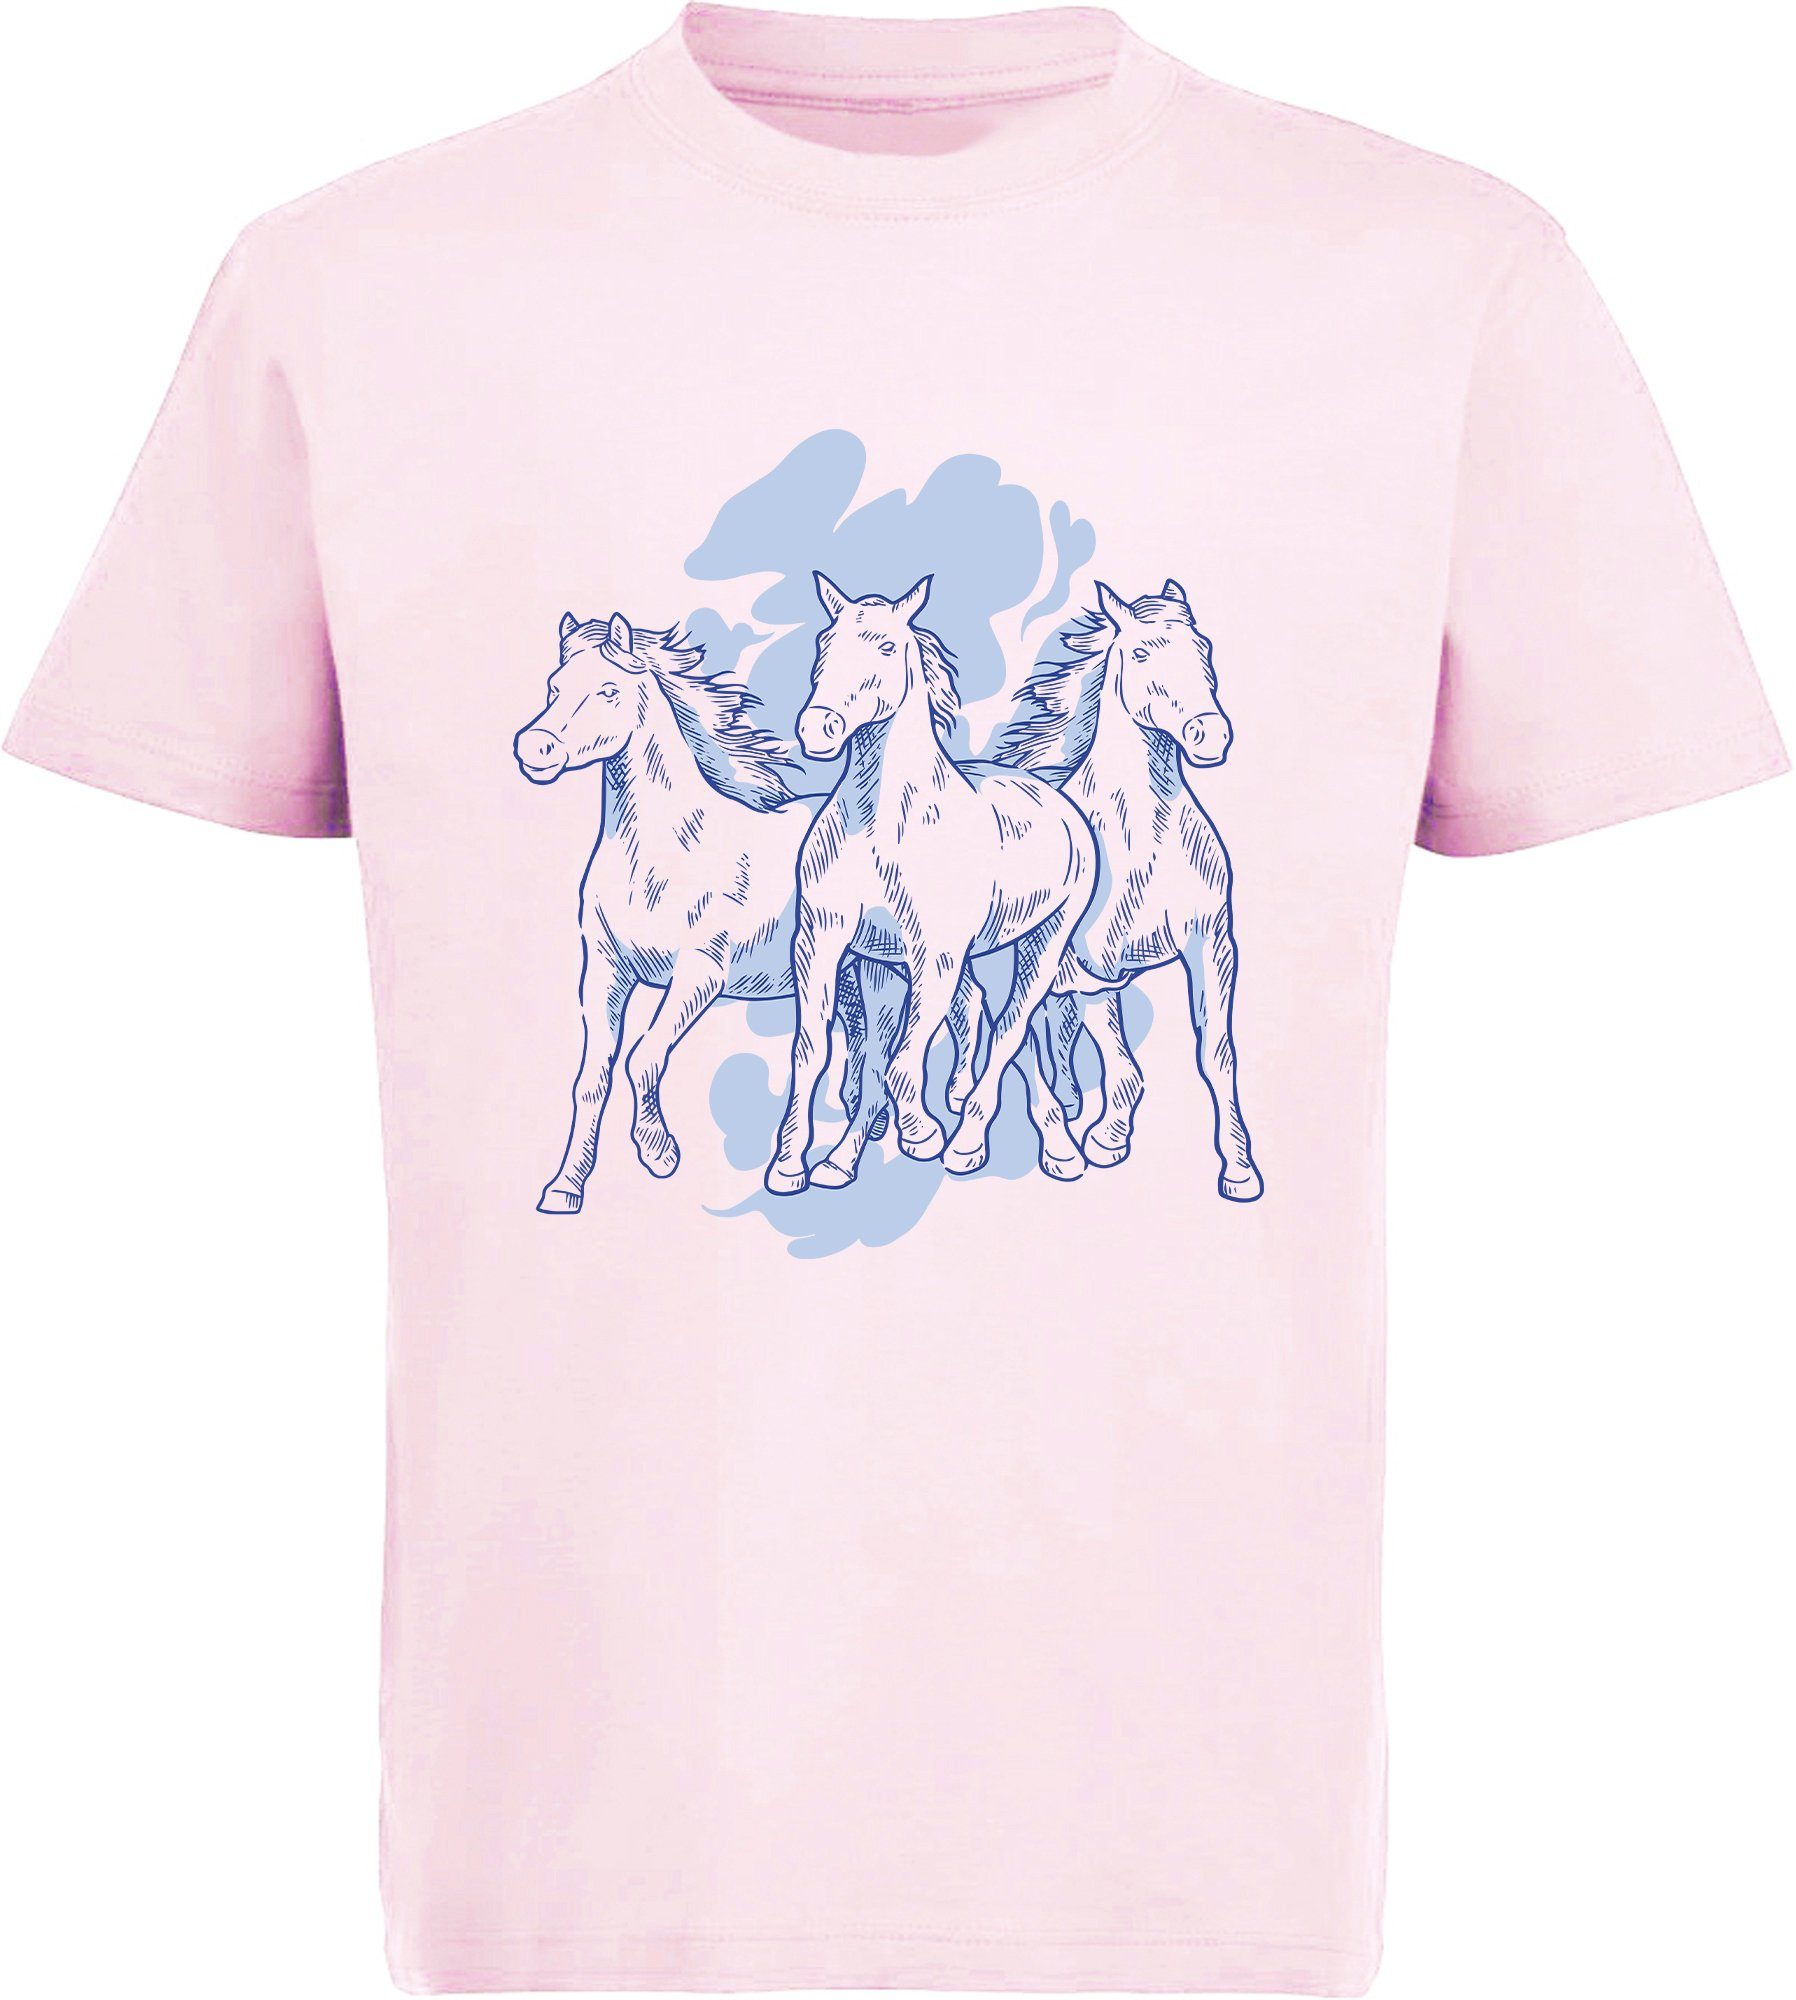 MyDesign24 Print-Shirt bedrucktes Mädchen T-Shirt mit 3 Pferden Baumwollshirt mit Aufdruck, i141 rosa